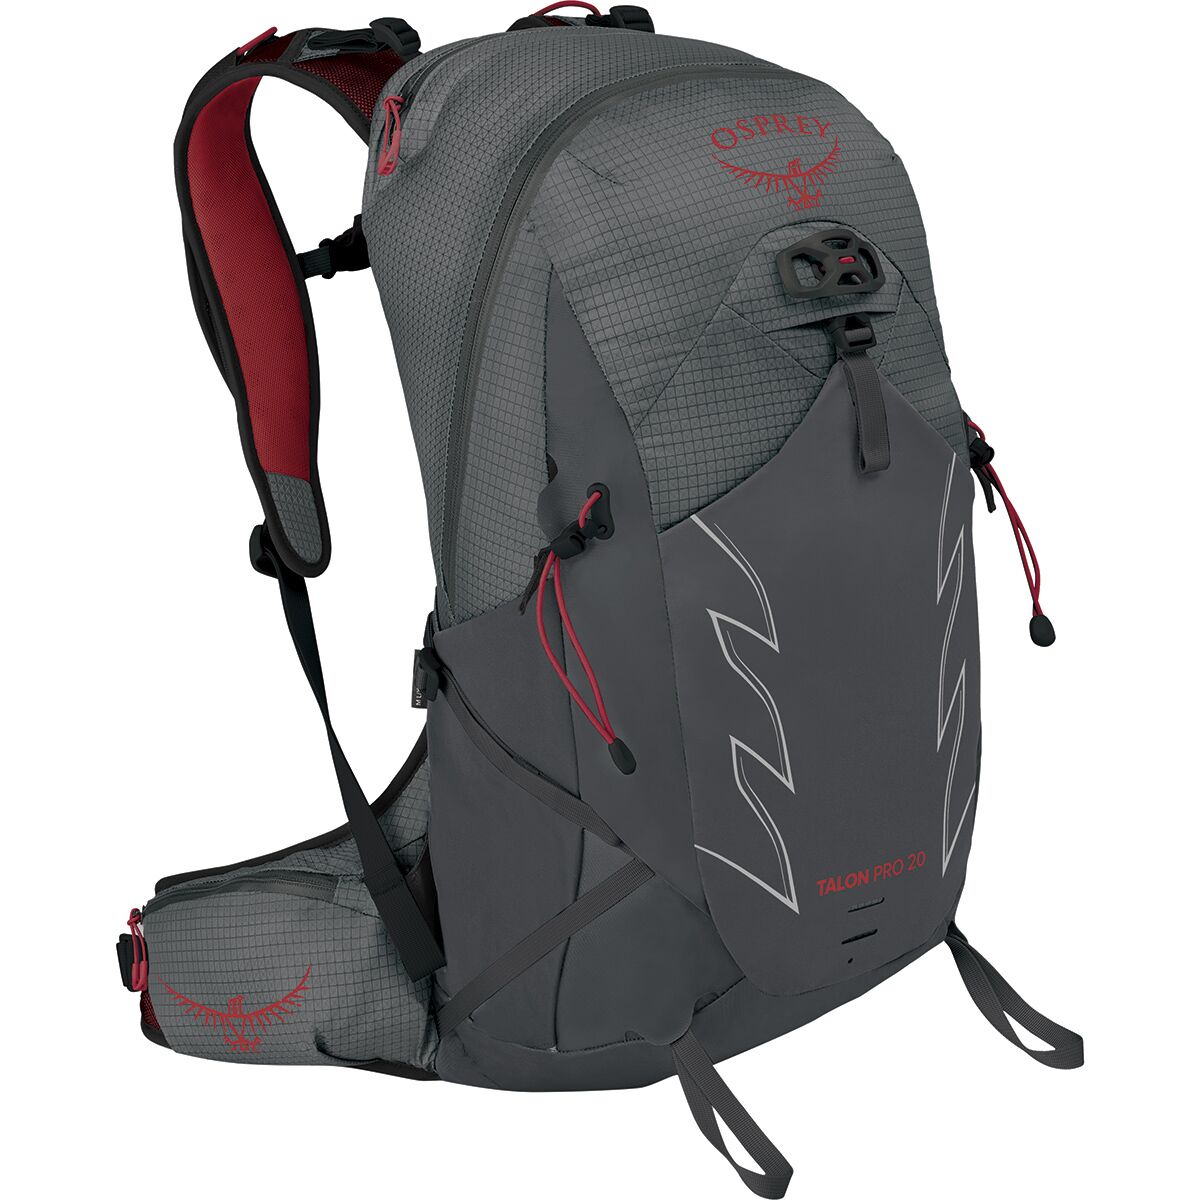 Osprey Packs Talon Pro 20L Backpack